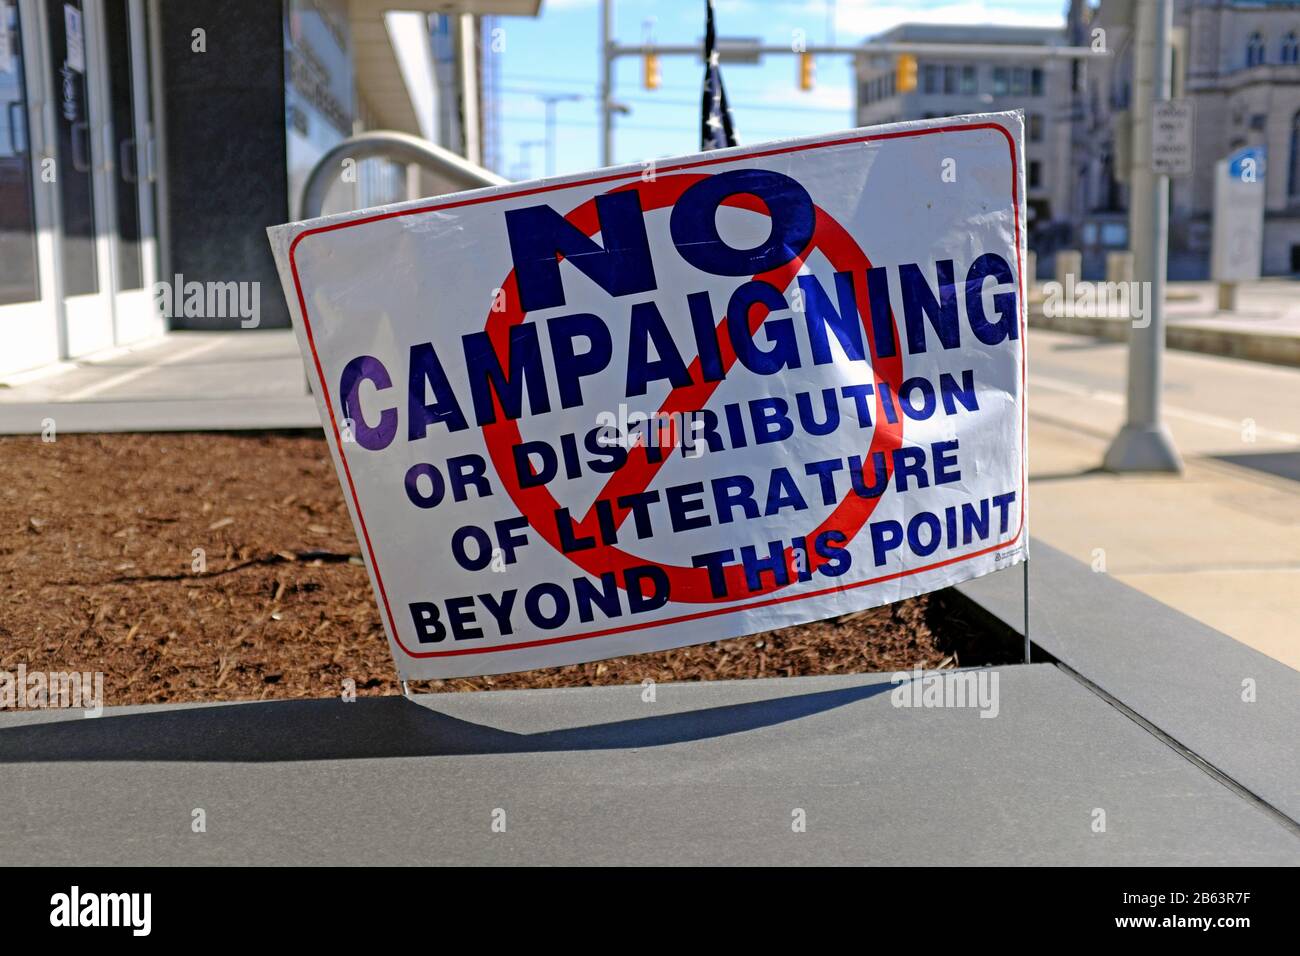 Un letrero fuera de la Junta Electoral del Condado de Cuyahoga en el centro de Cleveland, Ohio, advierte que no se permite ninguna campaña o distribución de literatura. Foto de stock